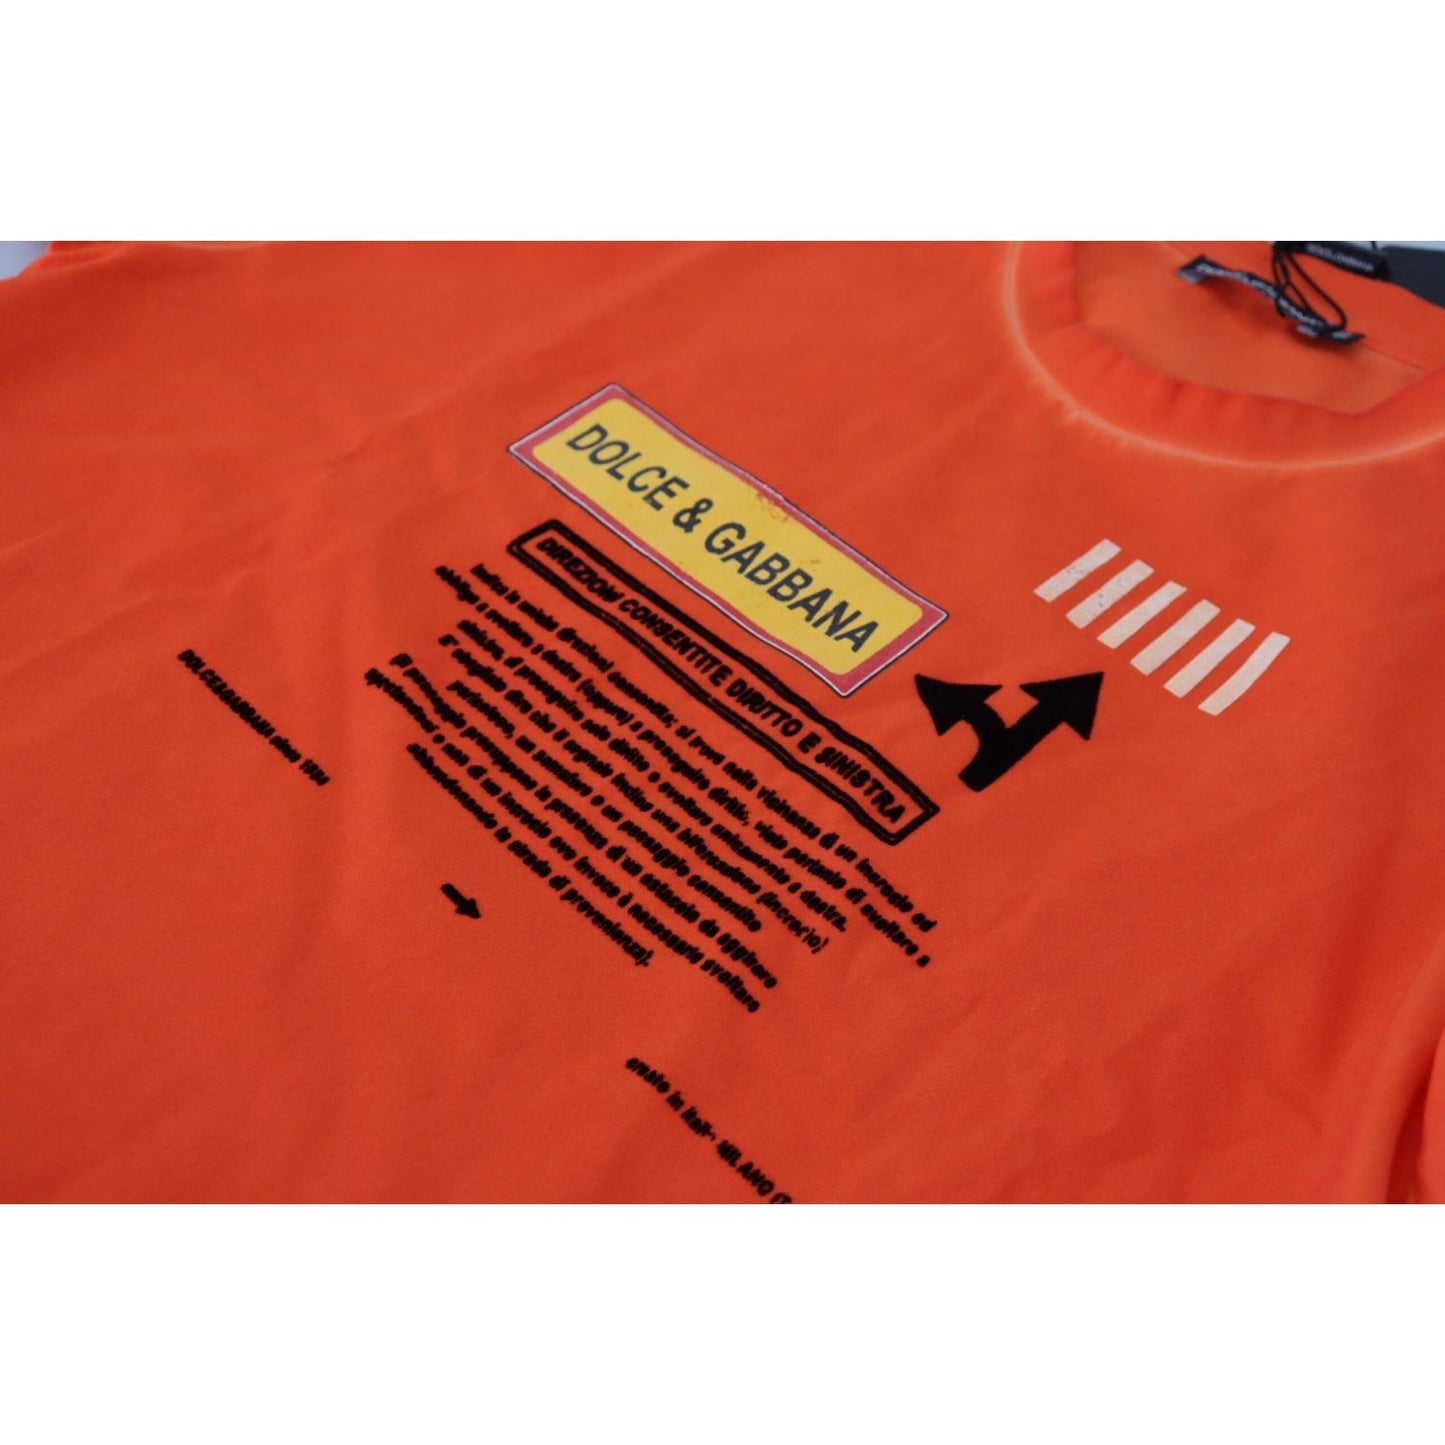 Dolce & Gabbana Elegant Crew Neck Orange Tee orange-cotton-logo-short-sleeve-t-shirt IMG_6482-scaled-5fe190aa-5c5.jpg